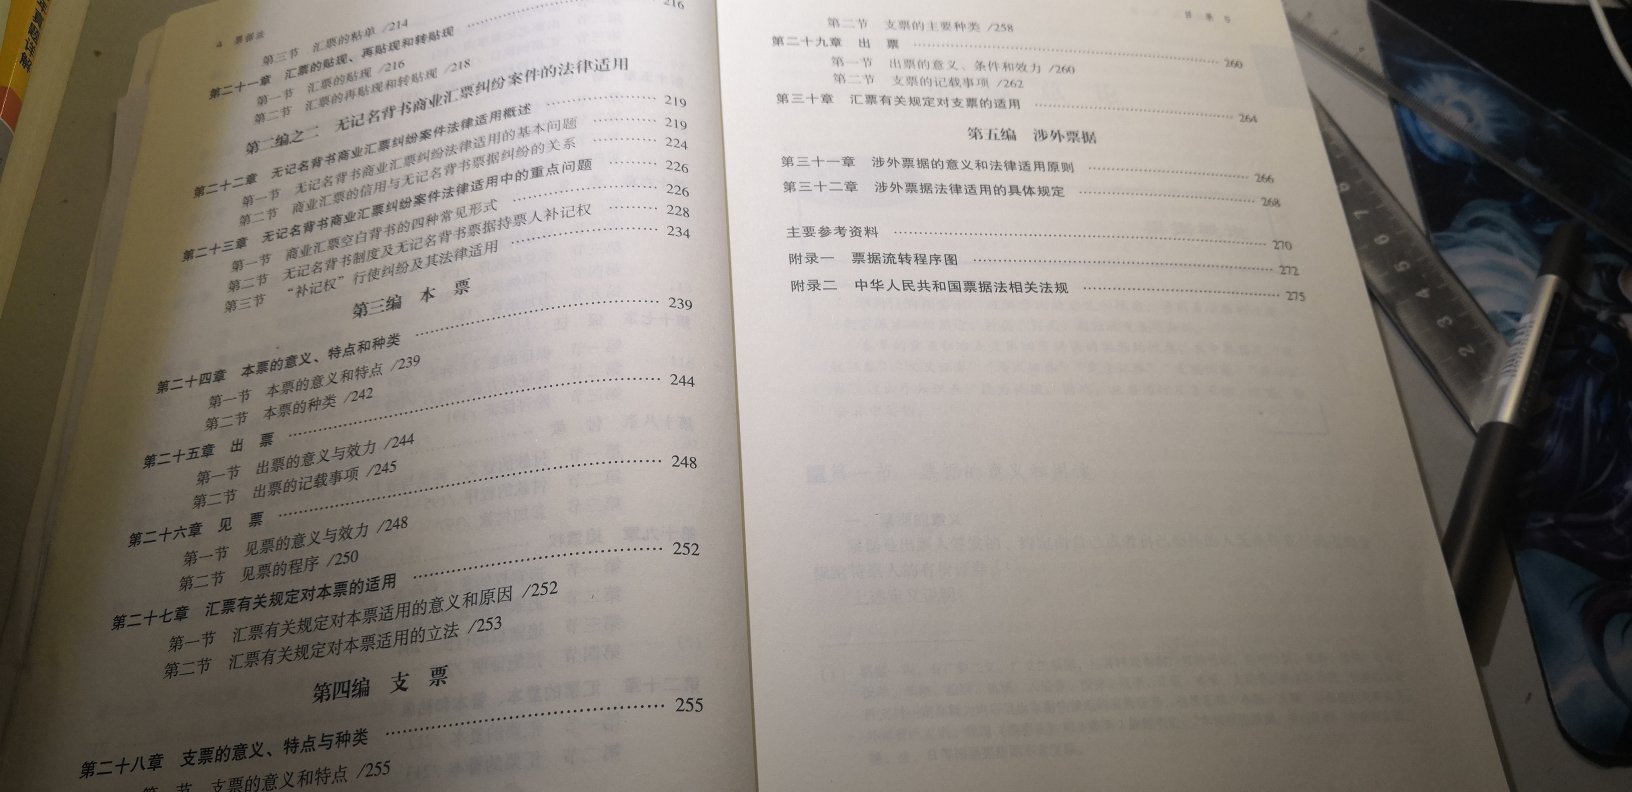 刘老师的票据法与时俱进，透过书本背后的图表可以帮助大家学习相关知识。